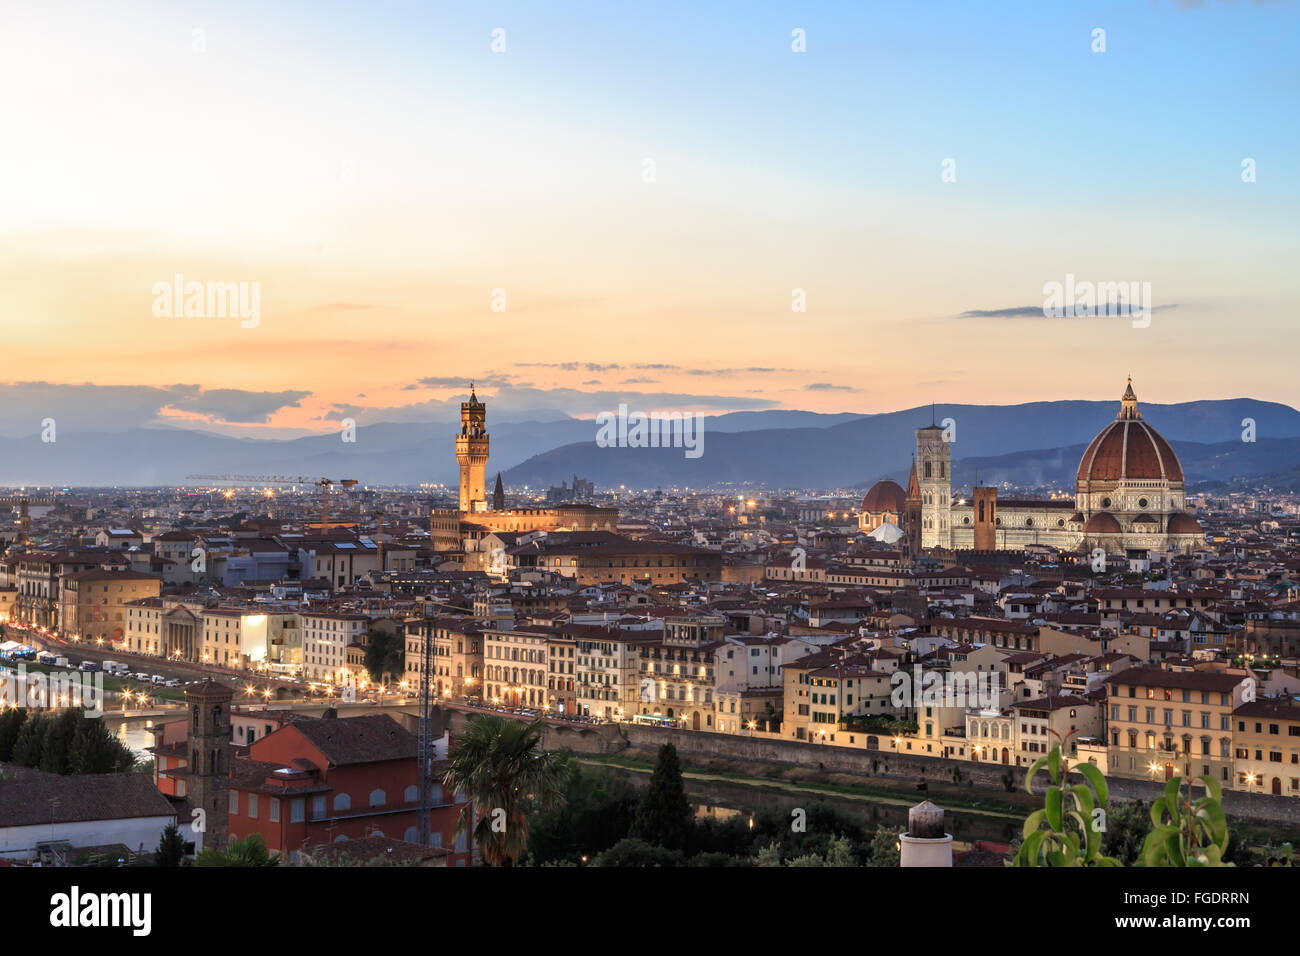 Vista superiore della città di Firenze con la vecchia ed edifici storici, su nuvoloso all'alba o del tramonto sullo sfondo del cielo. Foto Stock